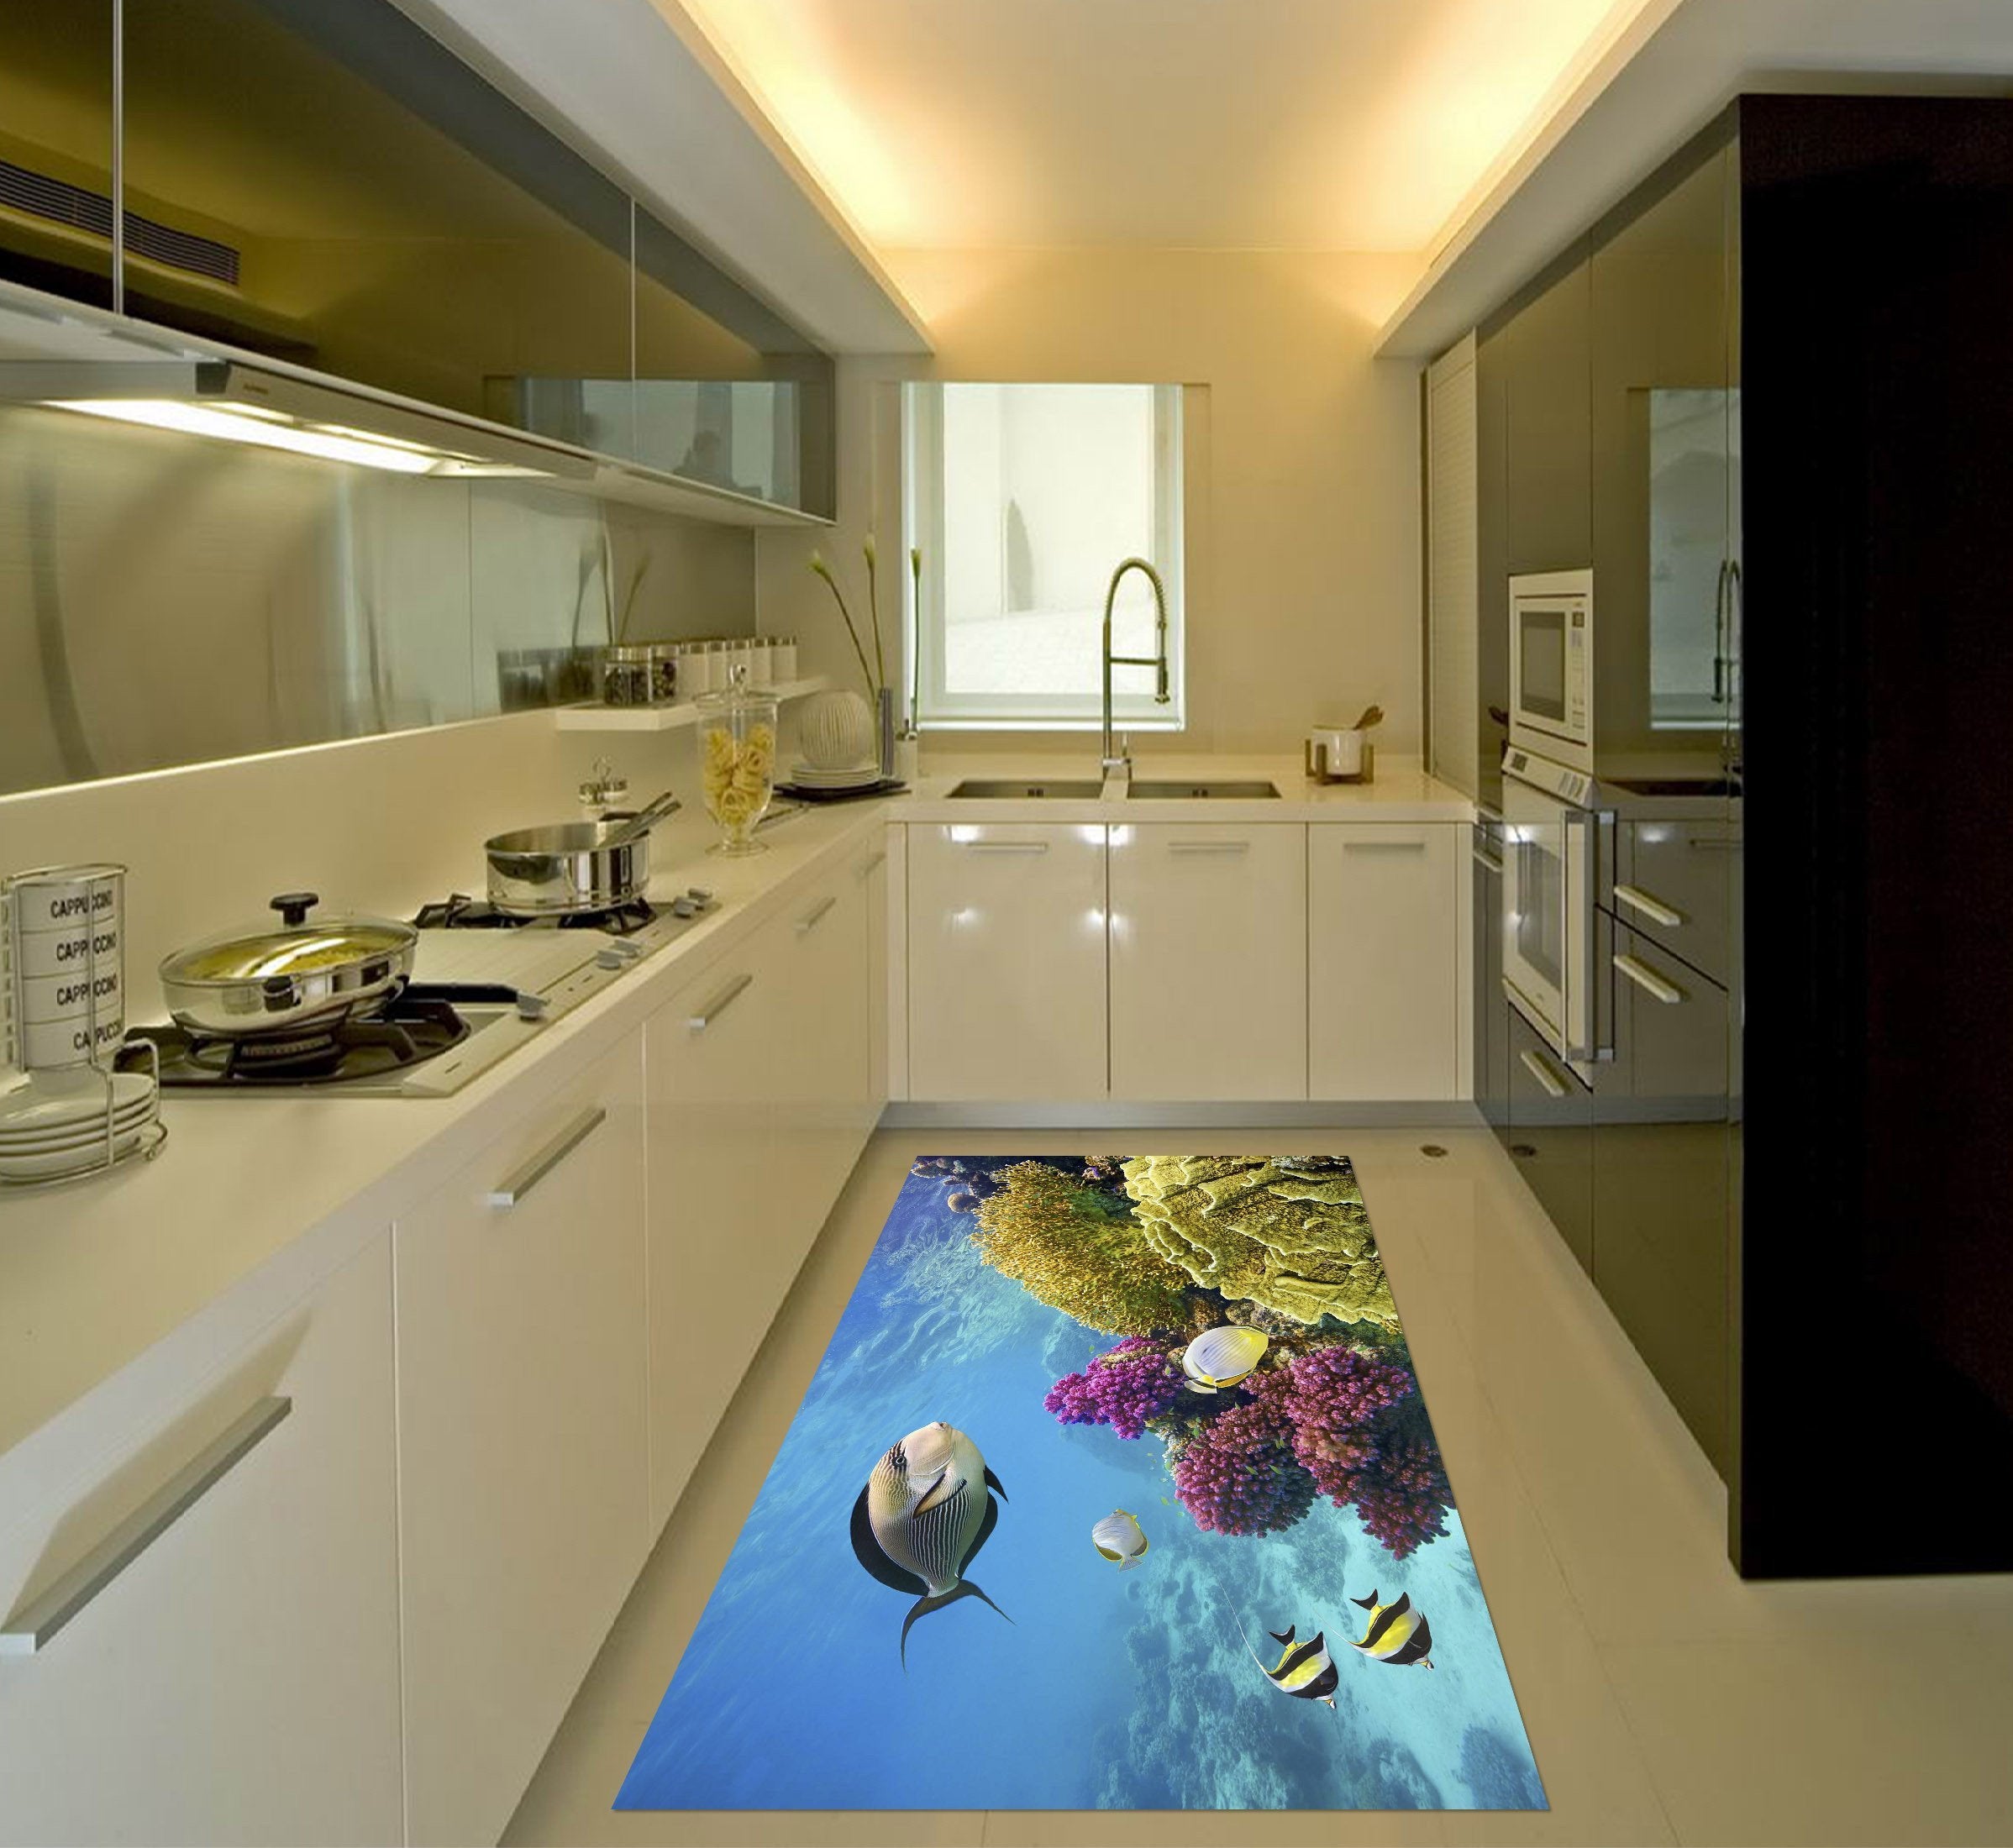 3D Ocean World 016 Kitchen Mat Floor Mural Wallpaper AJ Wallpaper 